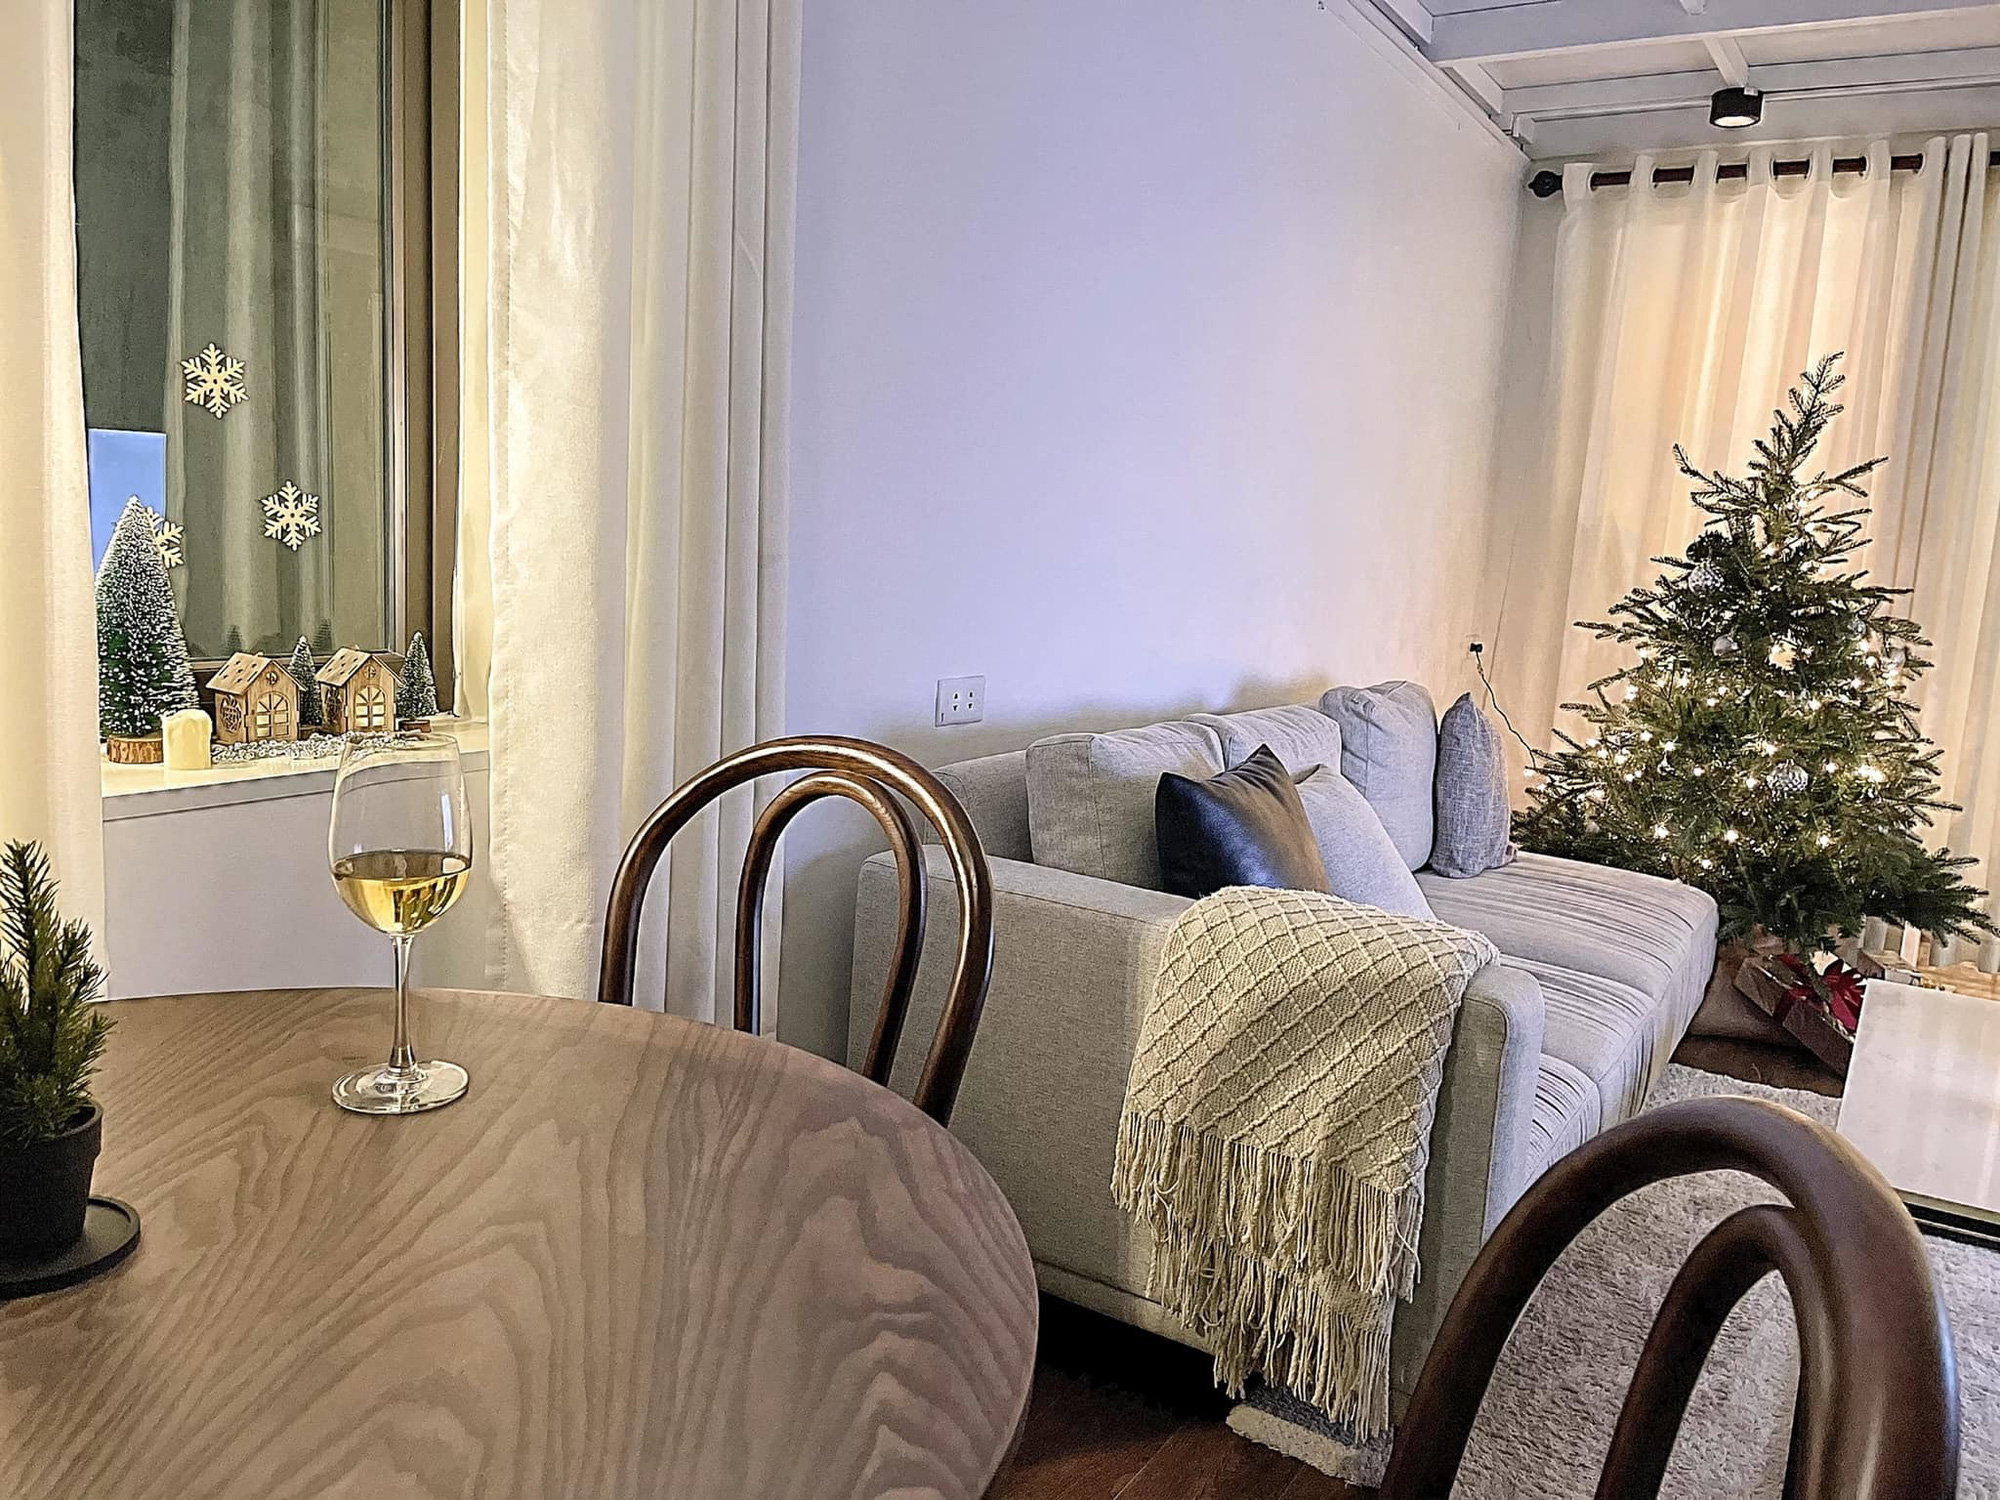 Trang trí nhà đón Giáng sinh đơn giản nhưng ấm cúng của bà mẹ một con Hải Phòng - Ảnh 12.